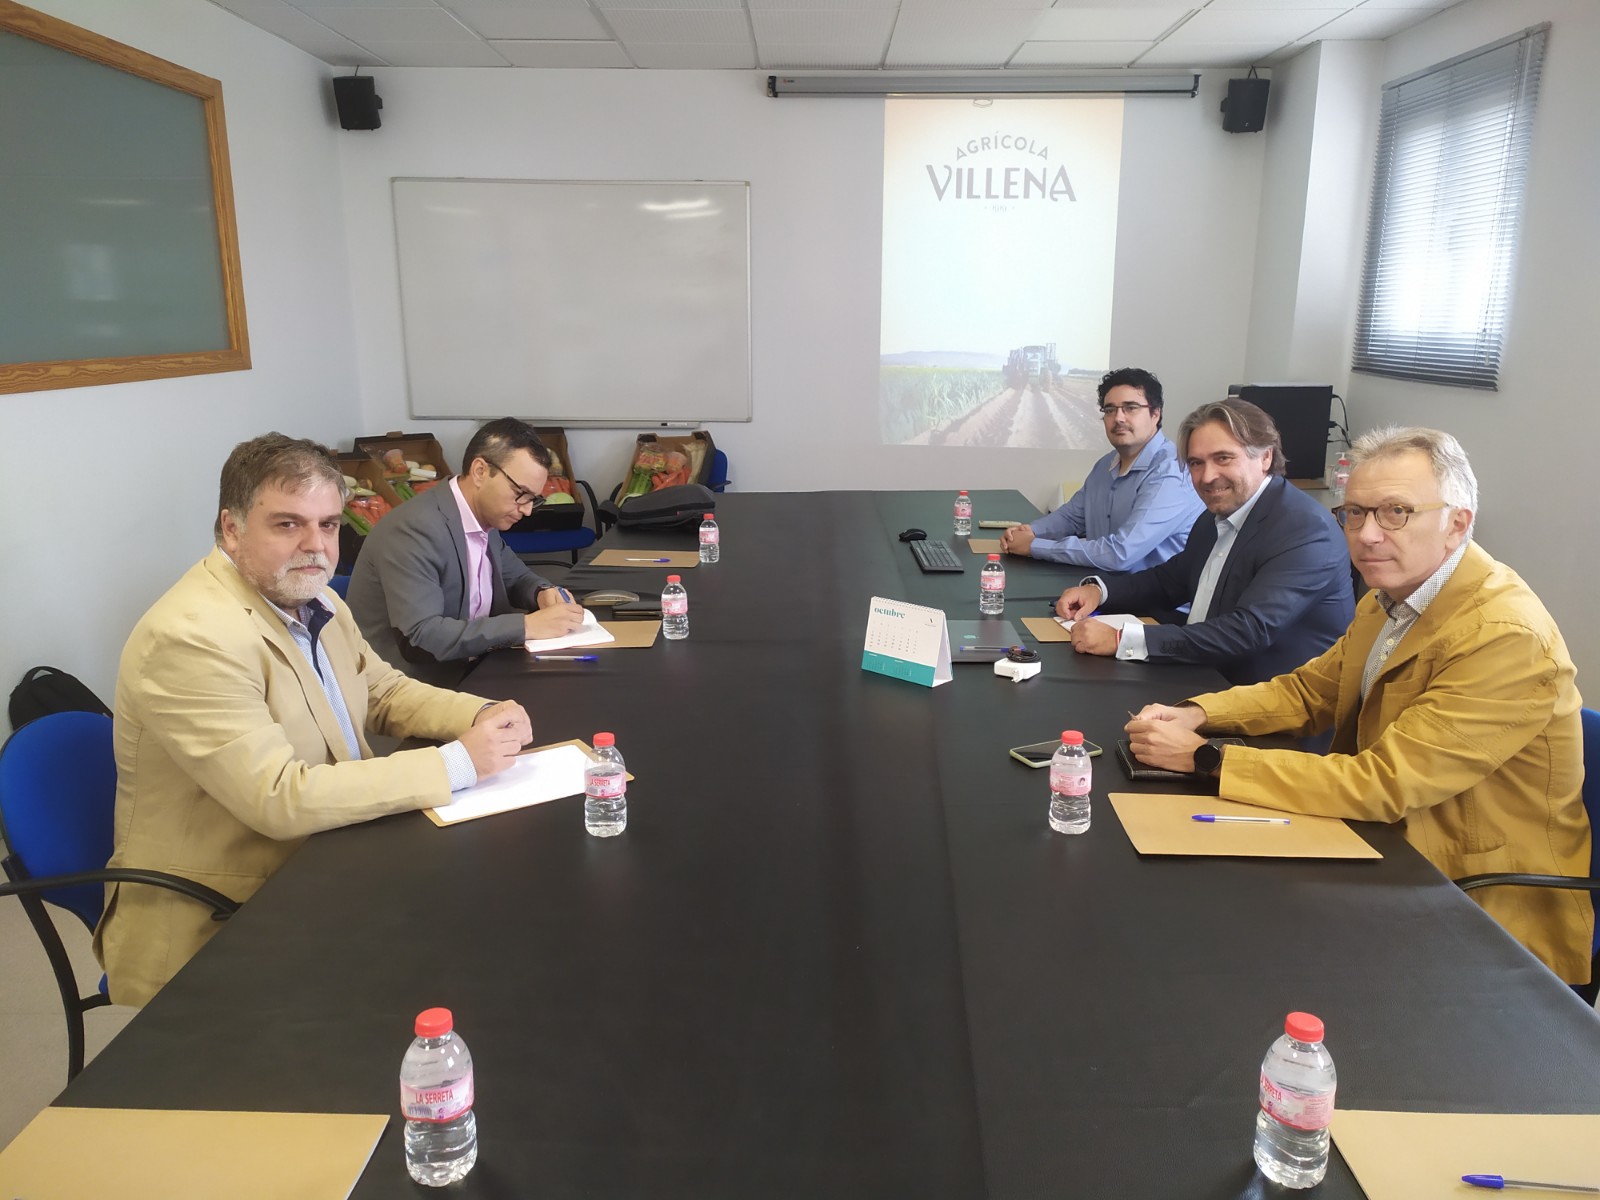 Los responsables de Agrícola Villena y el secretario autonómico de Agricultura buscan vías de cooperación para fortalecer la viabilidad de la empresa